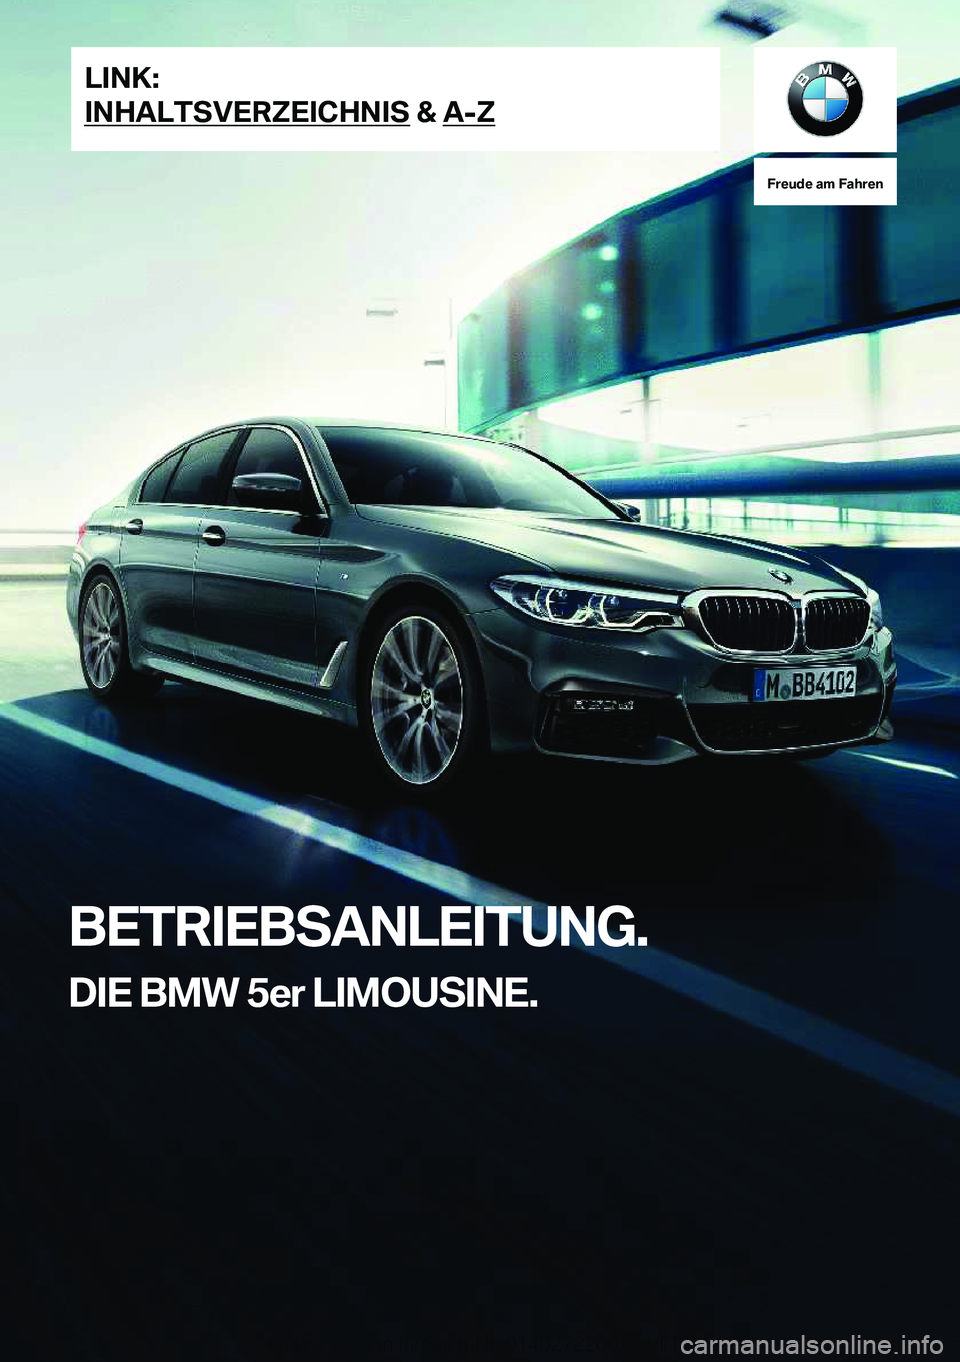 BMW 5 SERIES 2019  Betriebsanleitungen (in German) �F�r�e�u�d�e��a�m��F�a�h�r�e�n
�B�E�T�R�I�E�B�S�A�N�L�E�I�T�U�N�G�.�D�I�E��B�M�W��5�e�r��L�I�M�O�U�S�I�N�E�.�L�I�N�K�:
�I�N�H�A�L�T�S�V�E�R�Z�E�I�C�H�N�I�S��&��A�-�Z�O�n�l�i�n�e��V�e�r�s�i�o�n